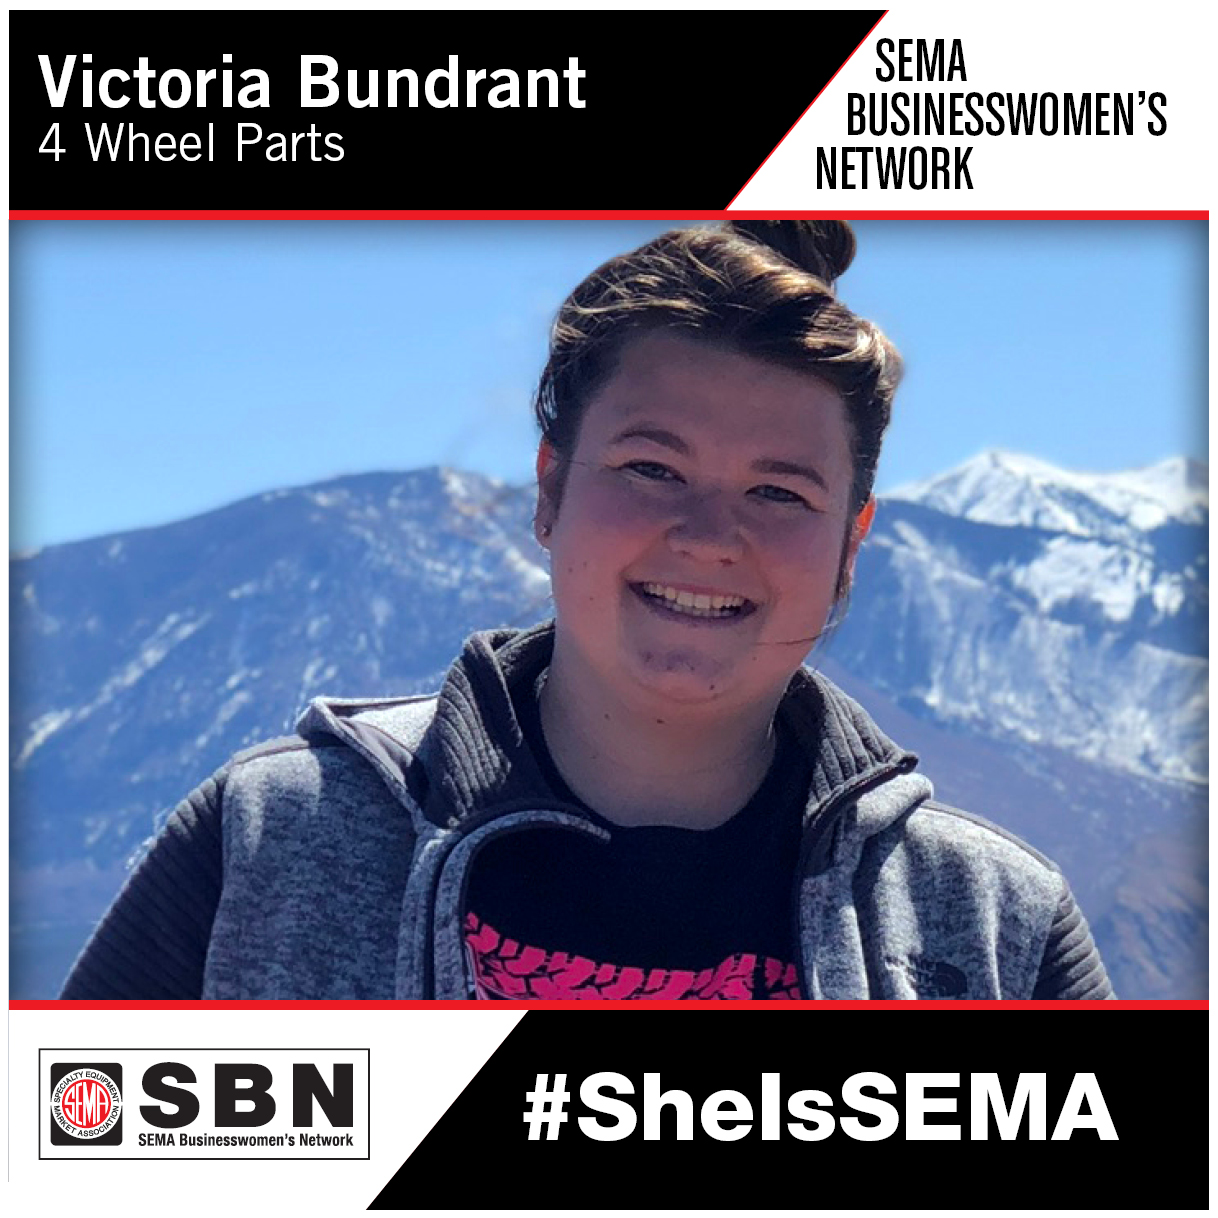 SBN Member Spotlight - Victoria Bundrant